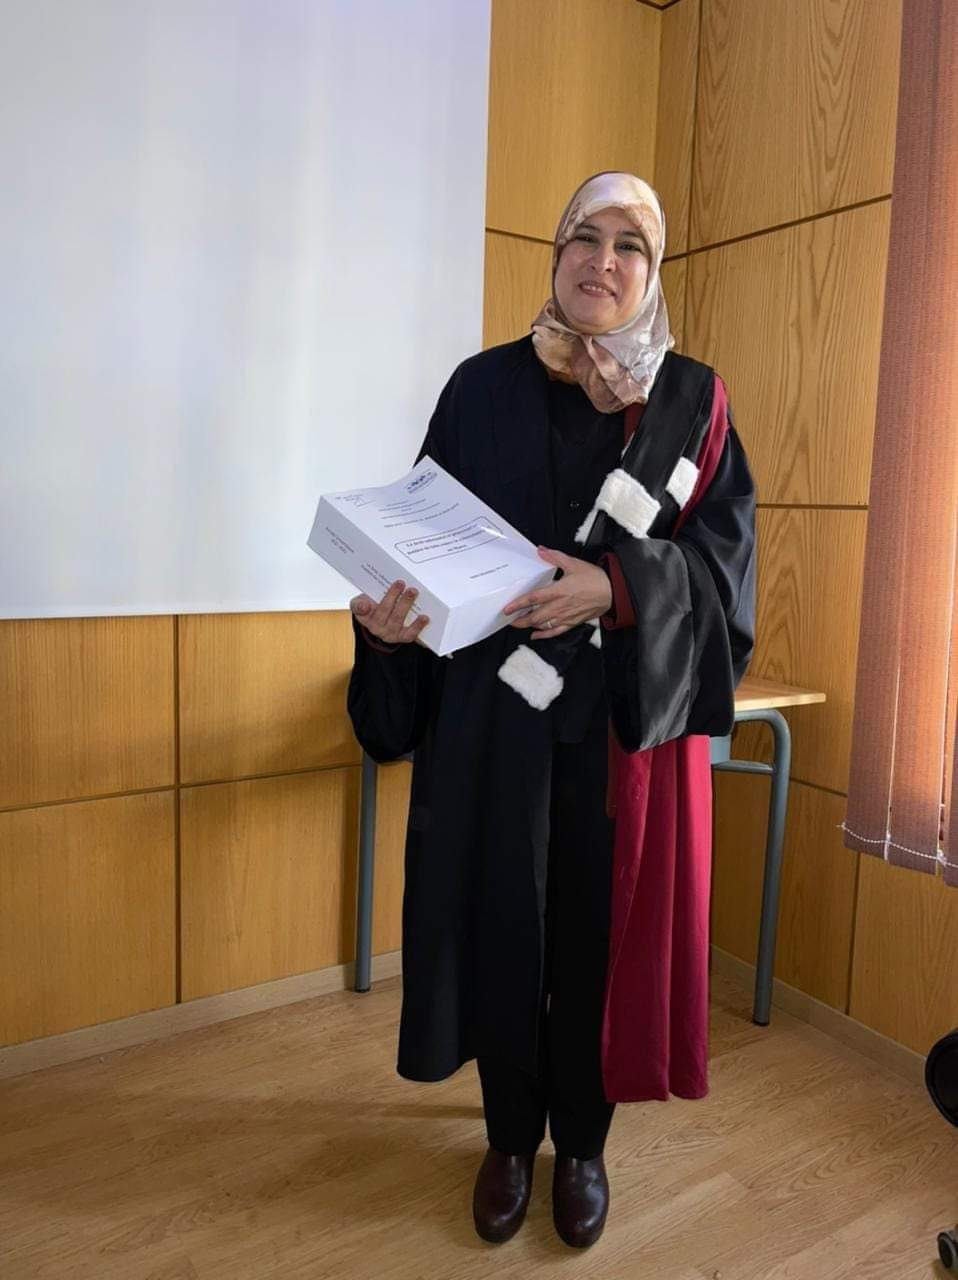 الطالبة منال بادل تحصل على شهادة دكتوراه الدولة والاتحاد المغربي للشغل ببرشيد يبرق في تهنئتها